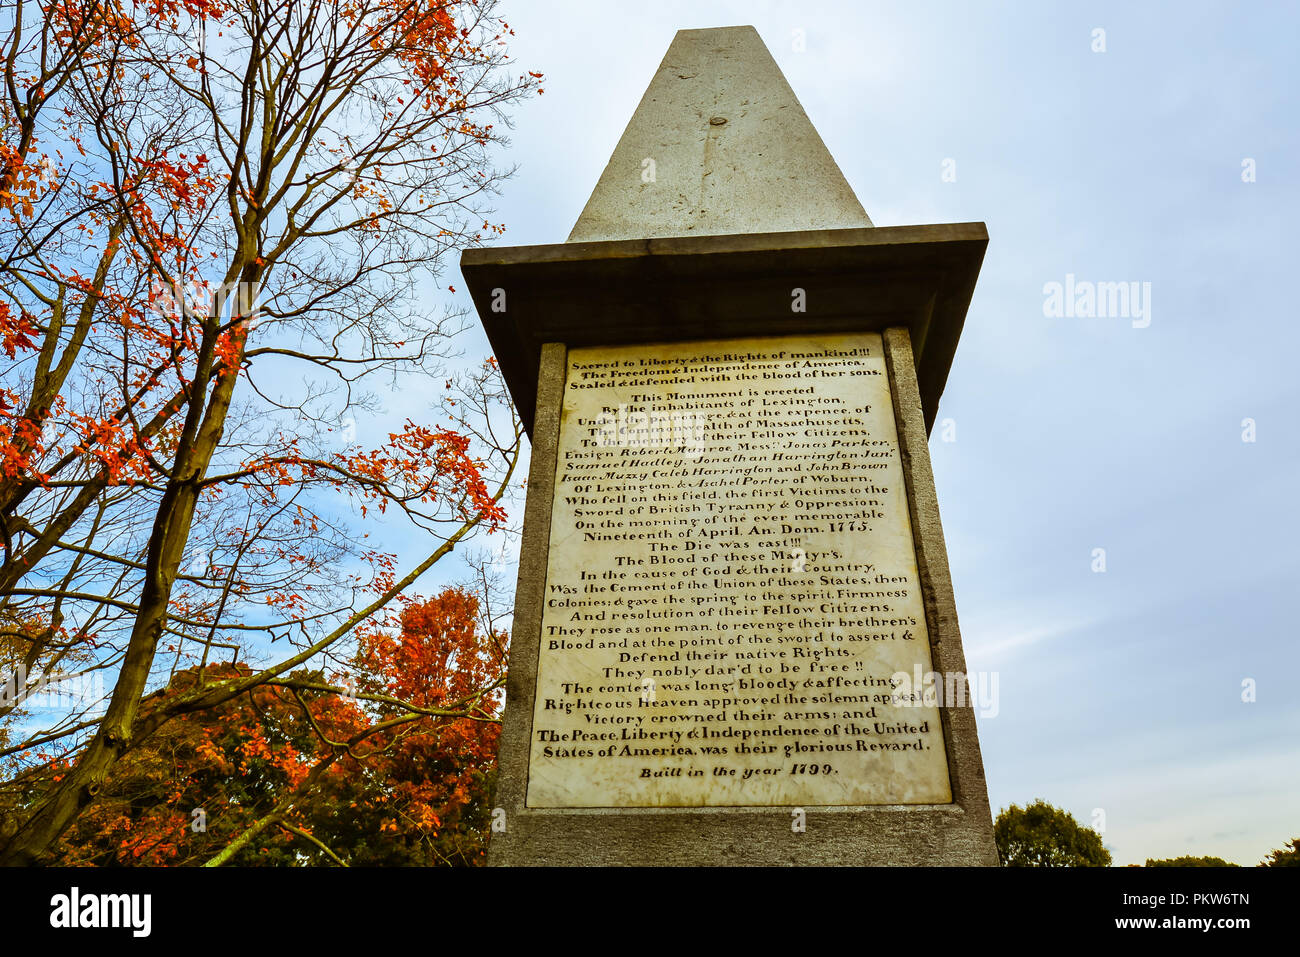 Revolutionäre Denkmal - erinnert an die Öffnung Schüsse der am 26.04.19, 1775 abgefeuert wurden, beginnend im Amerikanischen Unabhängigkeitskrieg. Stockfoto